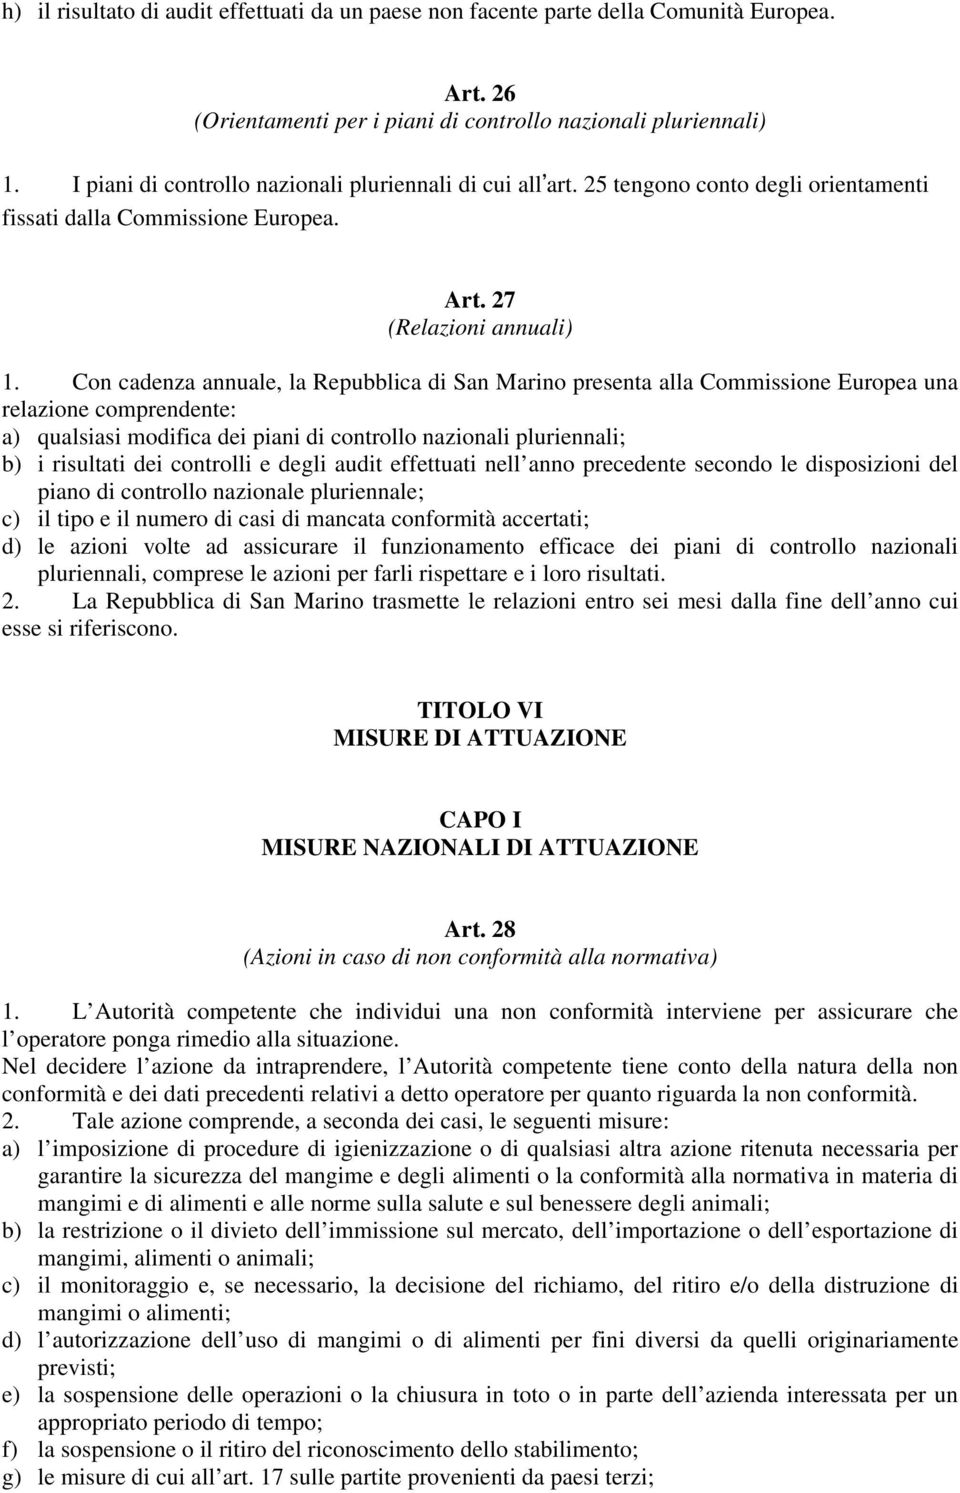 Con cadenza annuale, la Repubblica di San Marino presenta alla Commissione Europea una relazione comprendente: a) qualsiasi modifica dei piani di controllo nazionali pluriennali; b) i risultati dei